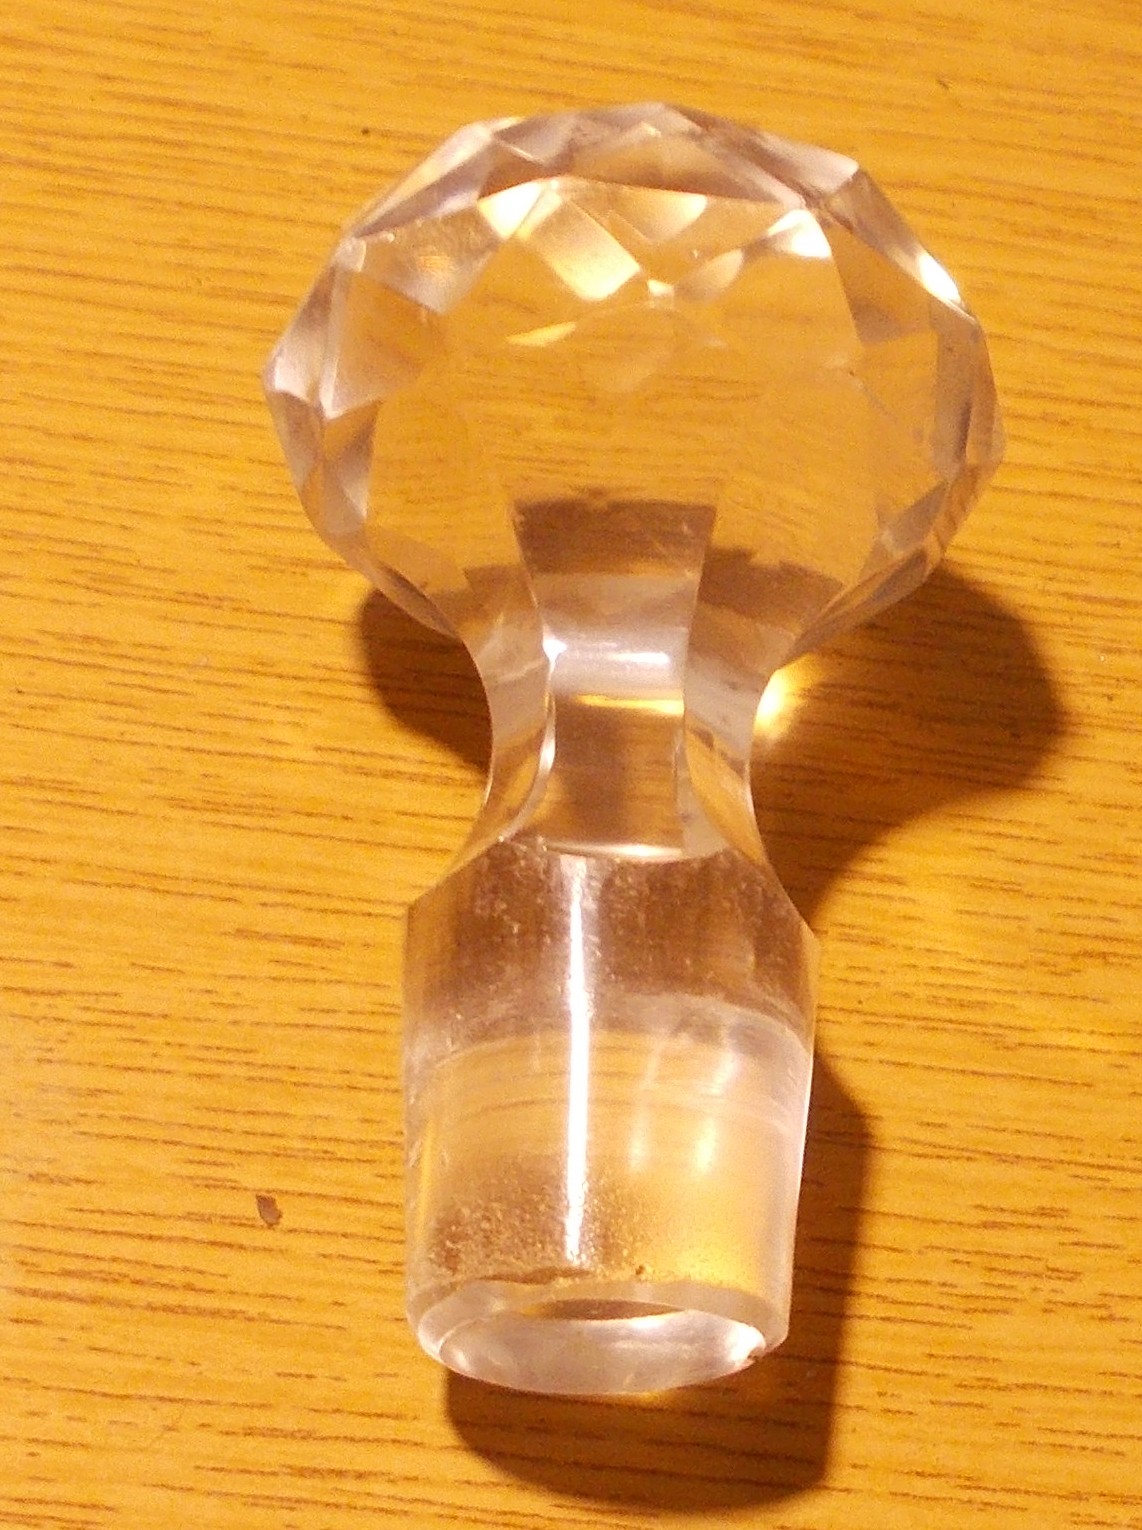 üveg dugó üveg anyagú dugó

üveg dugó üveg anyagú dugó
A képen látható állapotban.
Szép mintája van.
